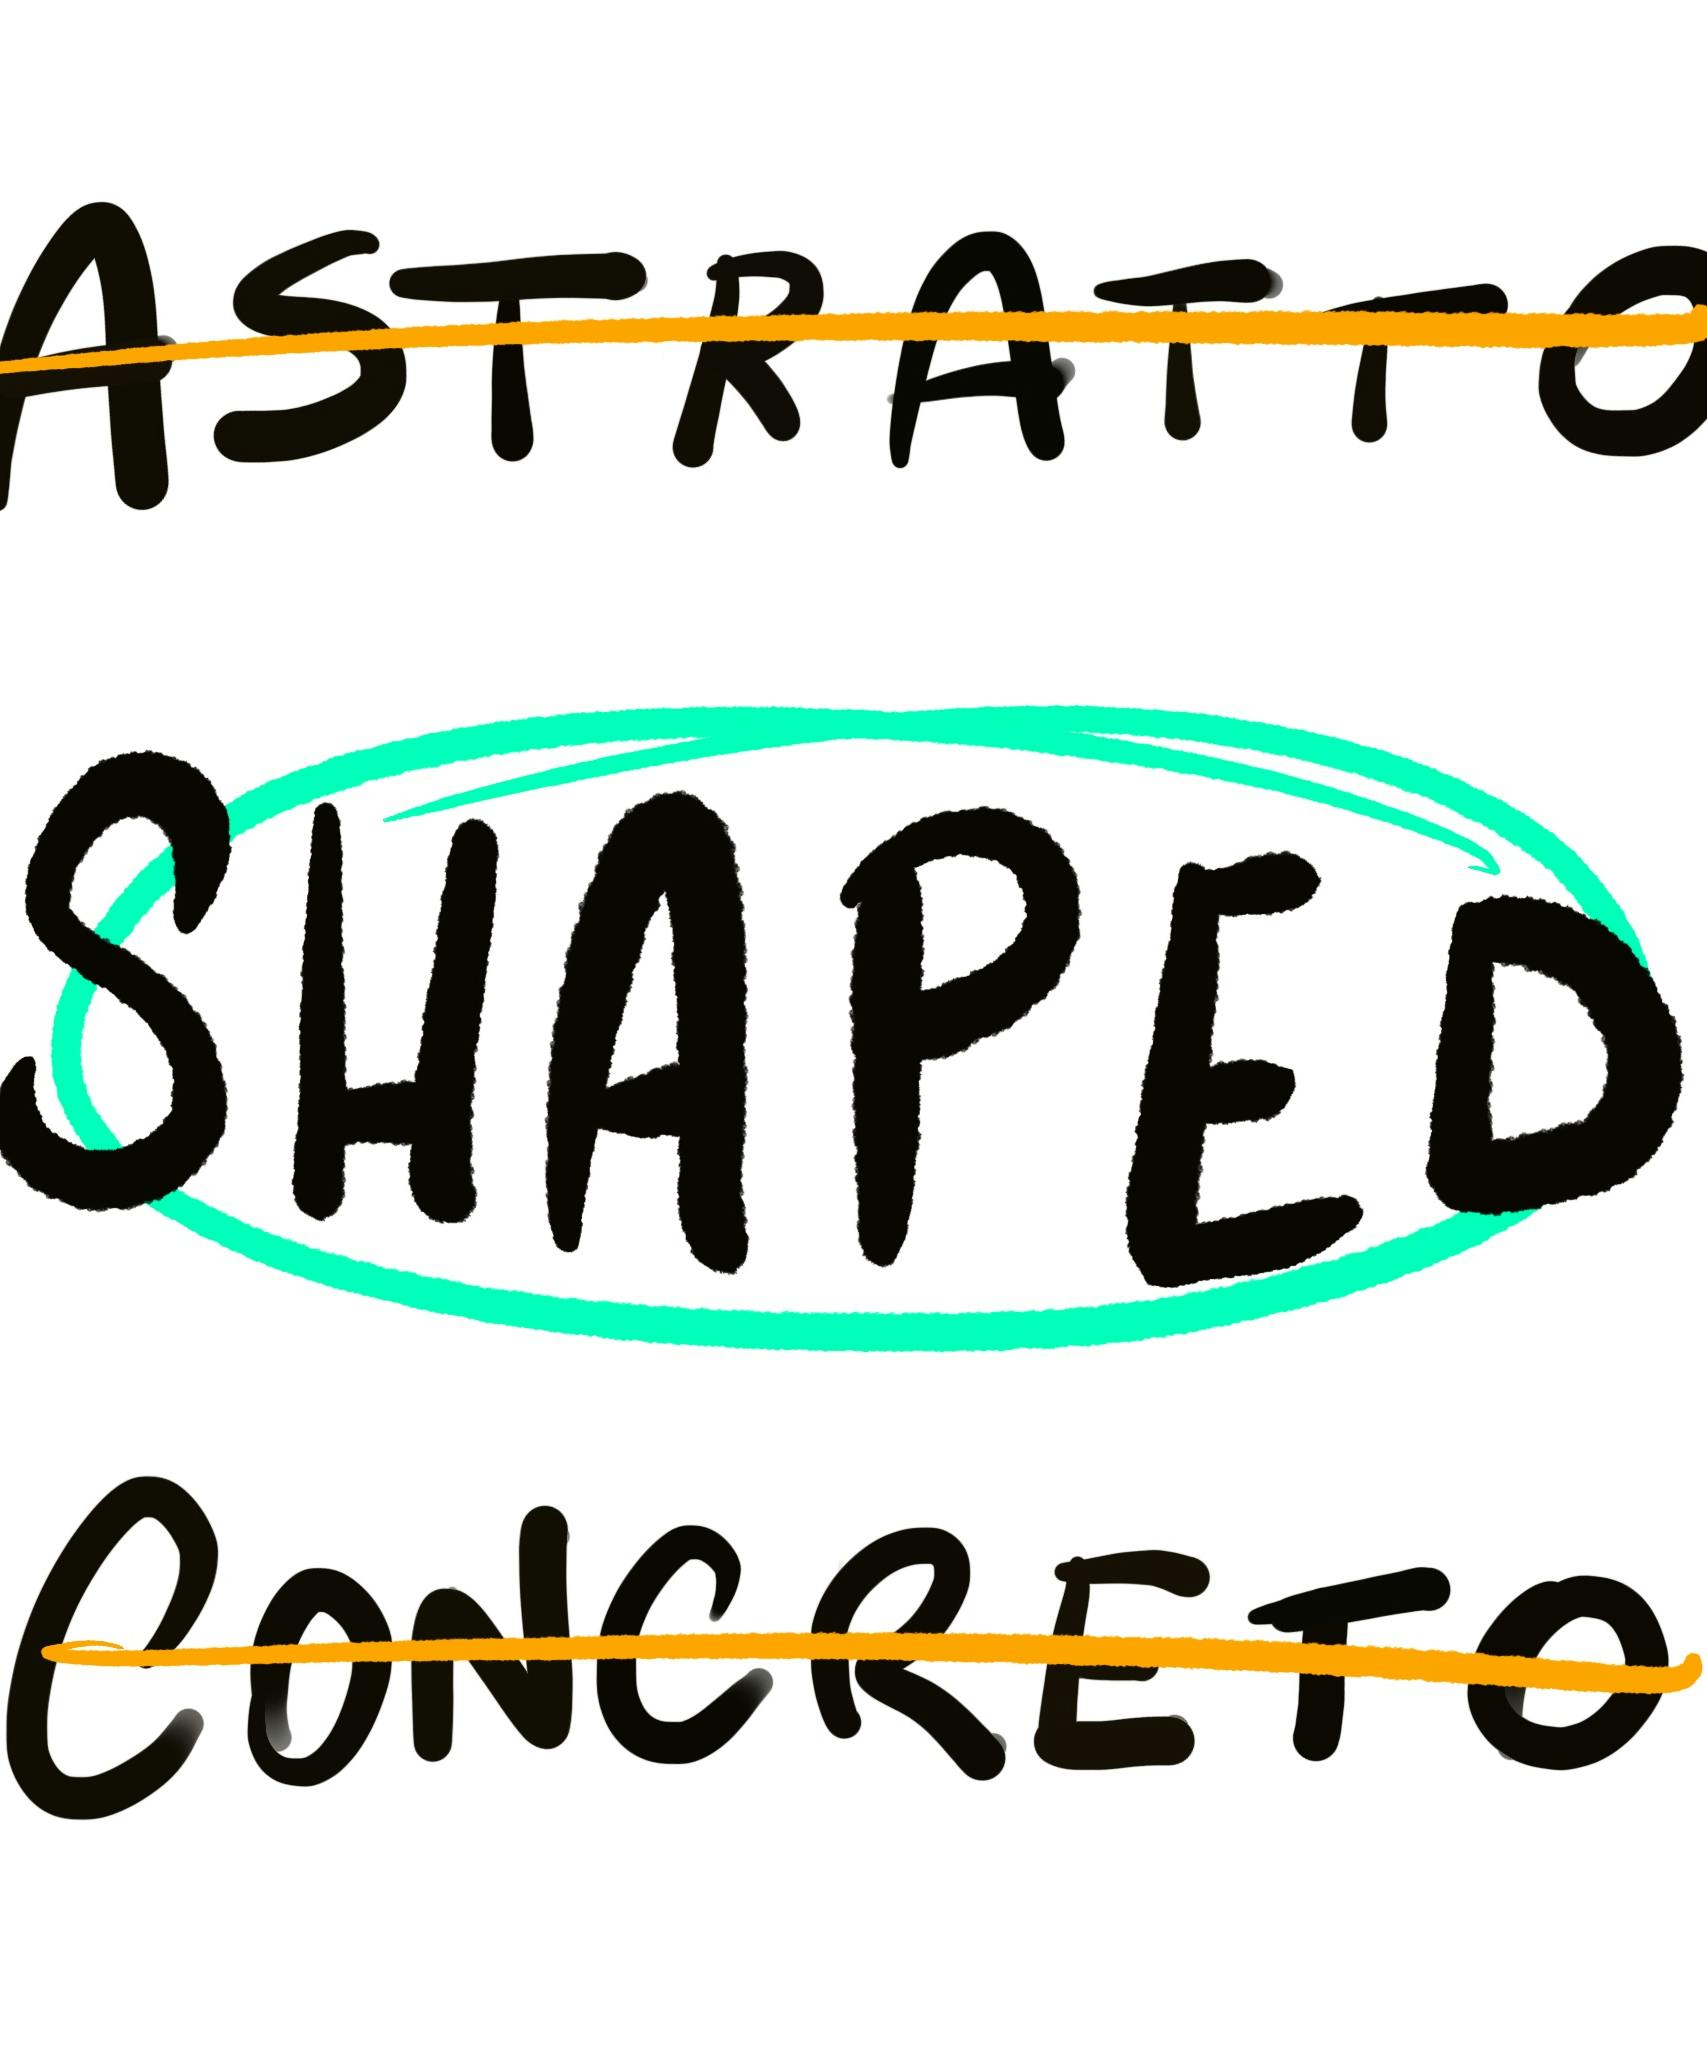 illustrazione con scritto astratto e concreto barrato ed evidenzia shaped